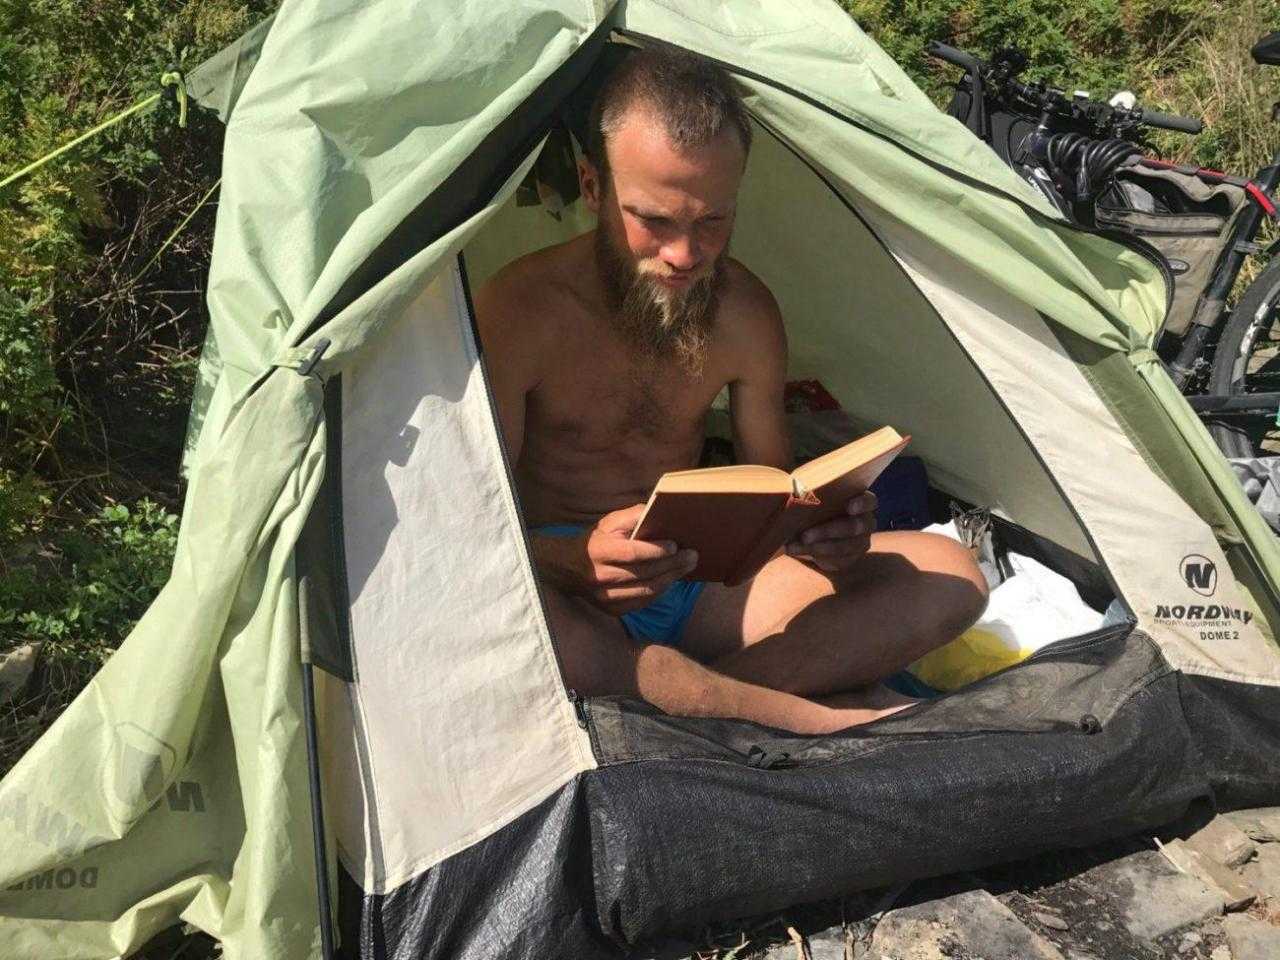 Читать книгу в палатке